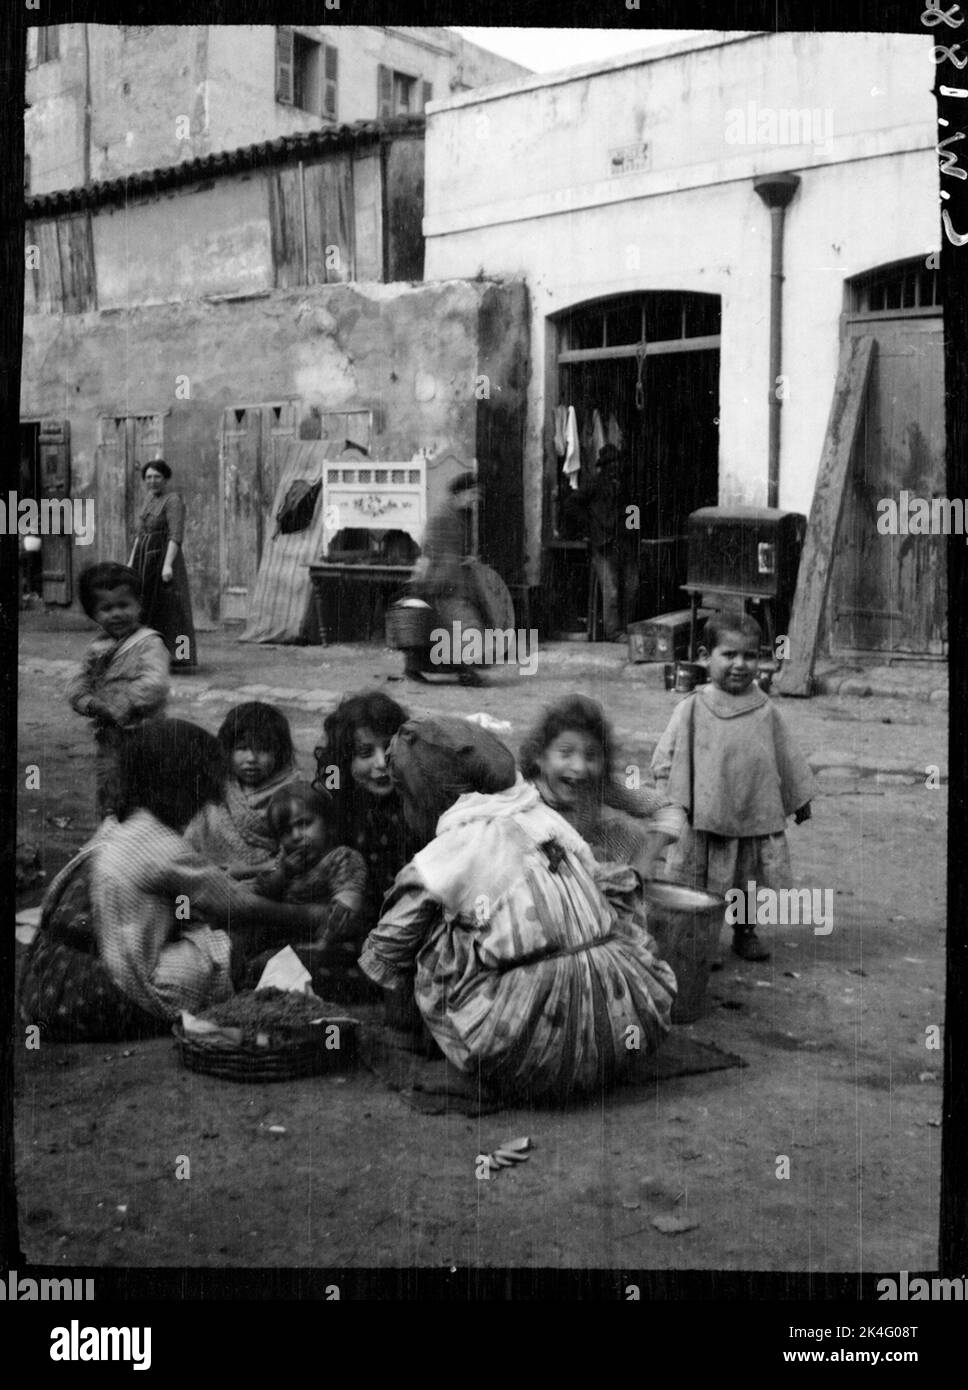 Jouer des enfants dans la rue. Probablement Ronda, Espagne nordique Banque D'Images